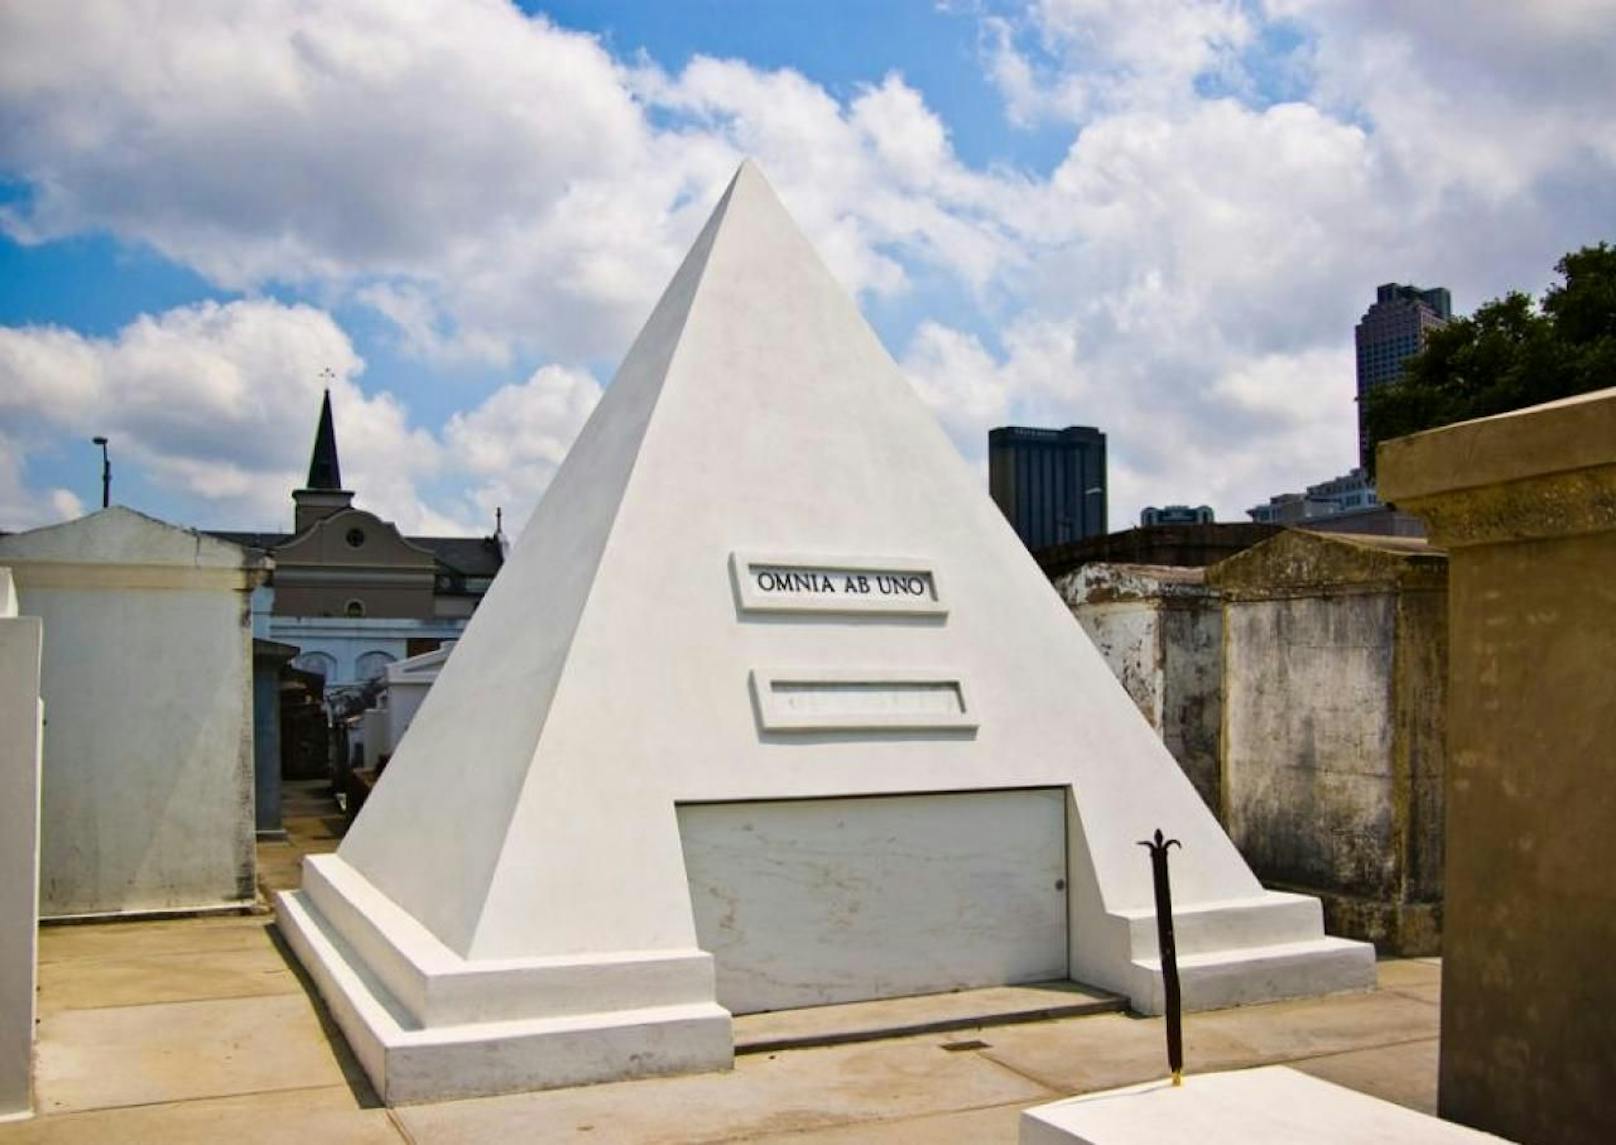 Nicolas Cage ließ sich schon im Jahr 2010 diese Pyramide am berühmtesten Friedhof von New Orleans bauen Fotocredit: Britt Reints/Creative Commons